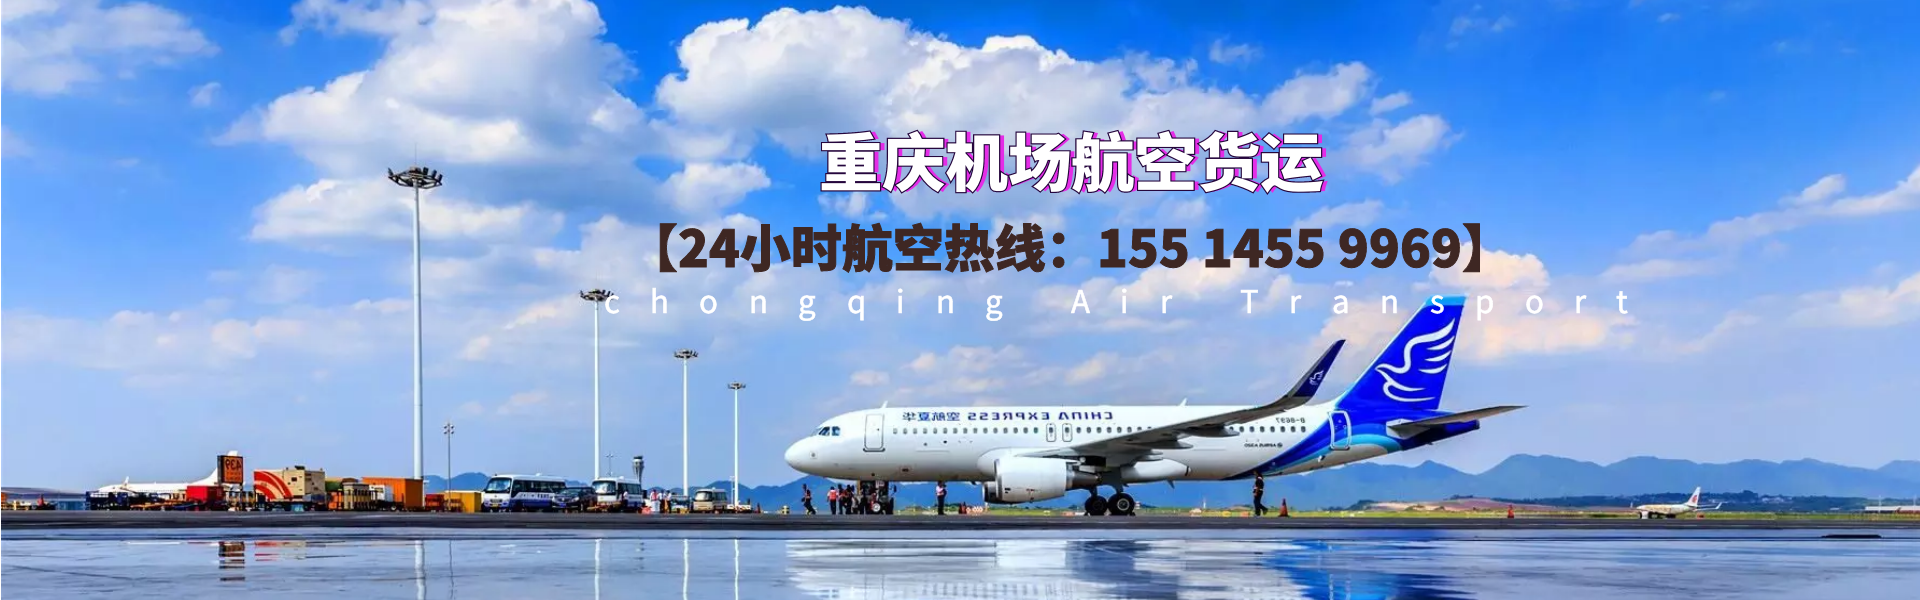 重庆机场航空货运